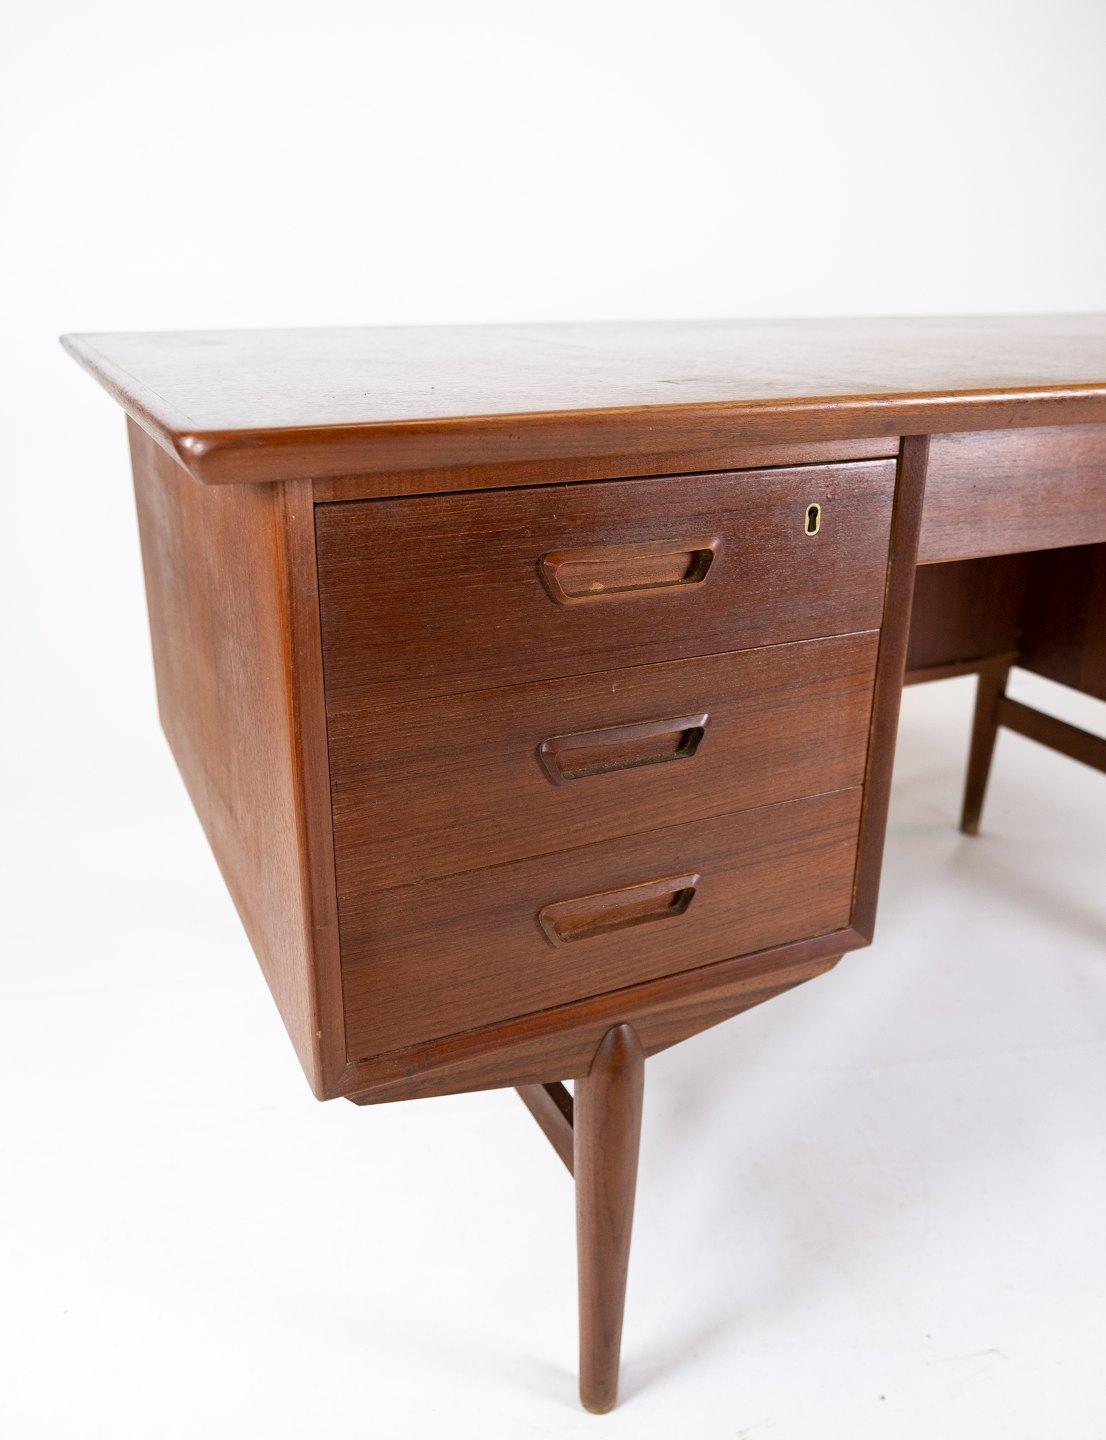 Dieser Schreibtisch ist ein prächtiges Beispiel für dänisches Design aus den 1960er Jahren und repräsentiert diese Epoche mit seiner zeitlosen Erscheinung und Funktionalität.

Der aus Teakholz gefertigte Schreibtisch strahlt eine warme und